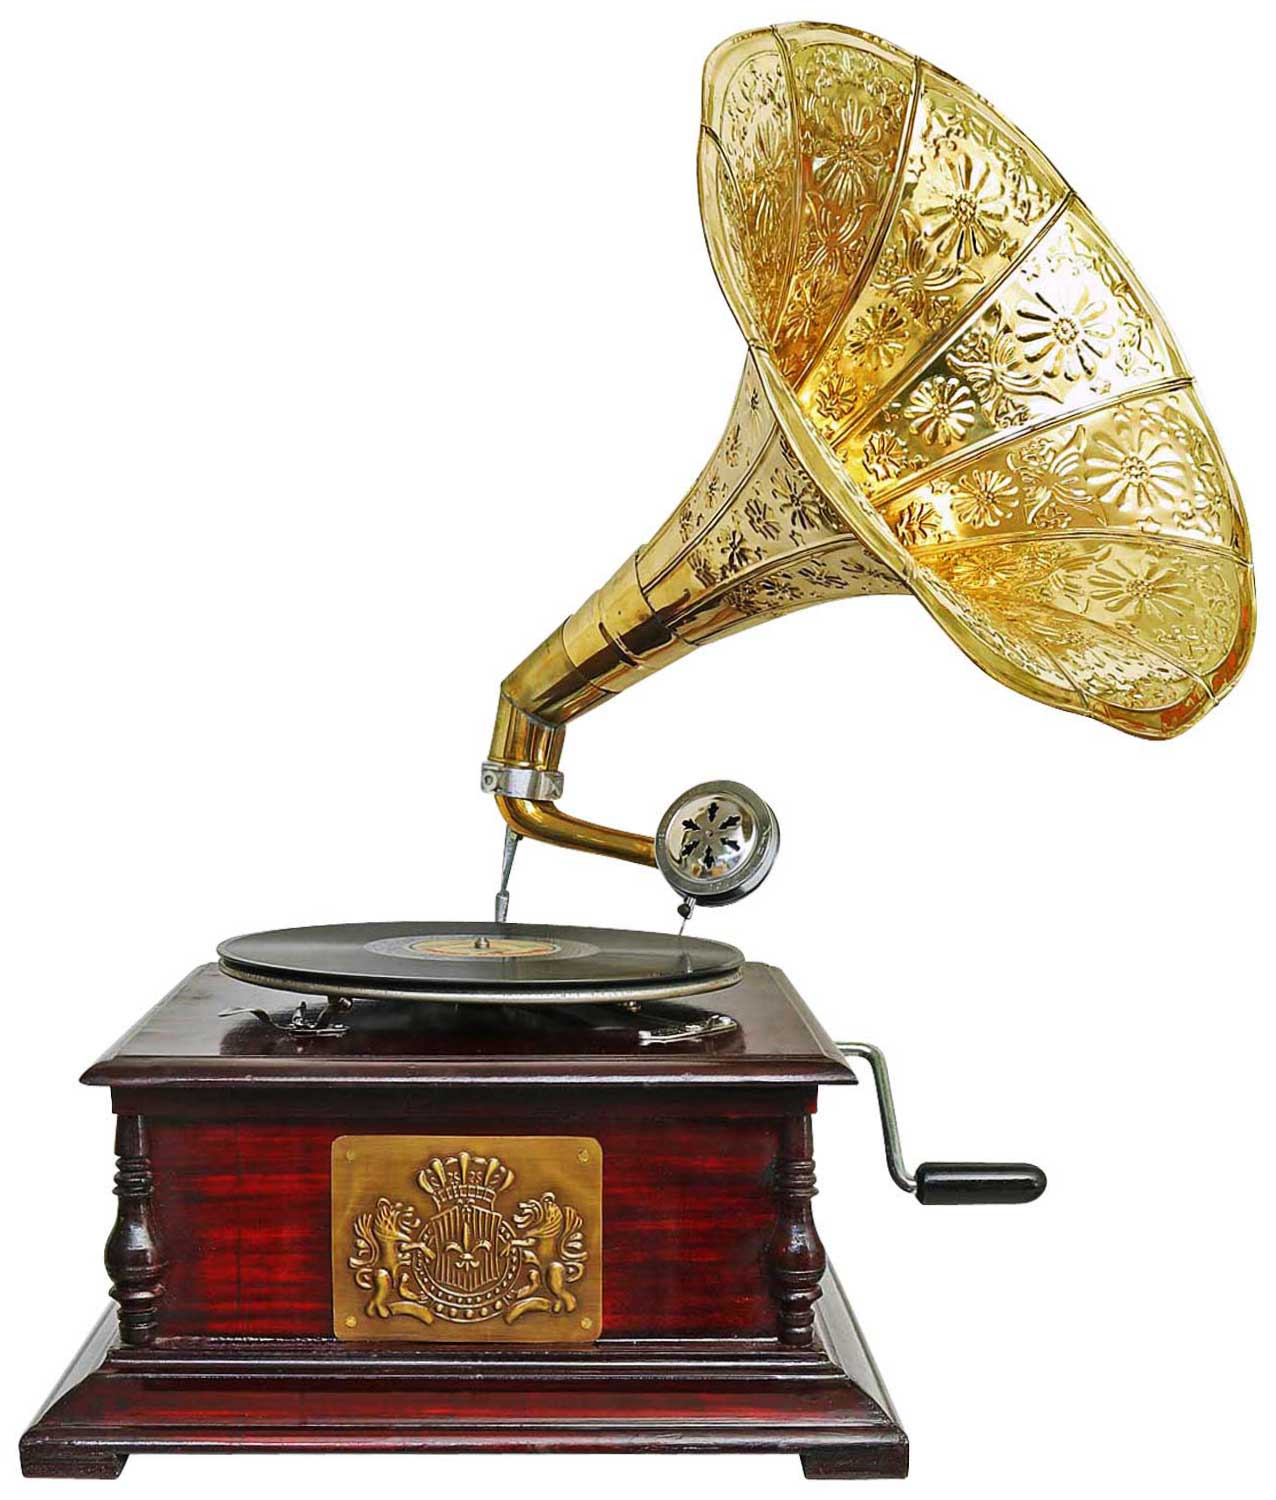 Nostalgia grammofono gramophone imbuto decorazione in stile antico R03 